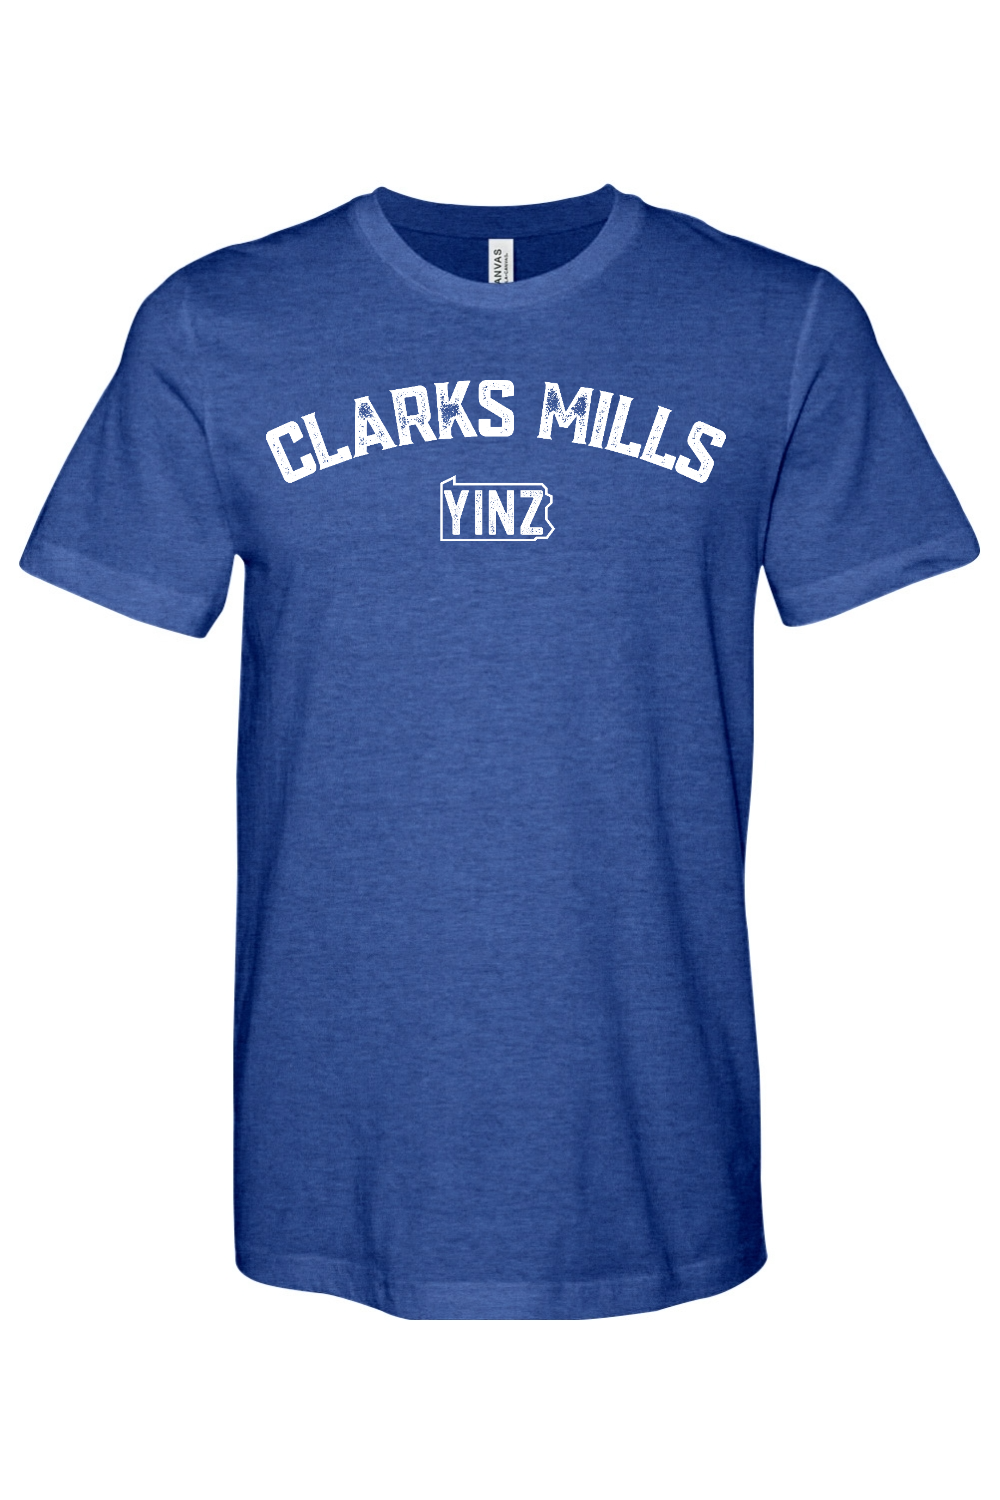 Clarks Mills Yinzylvania - Yinzylvania